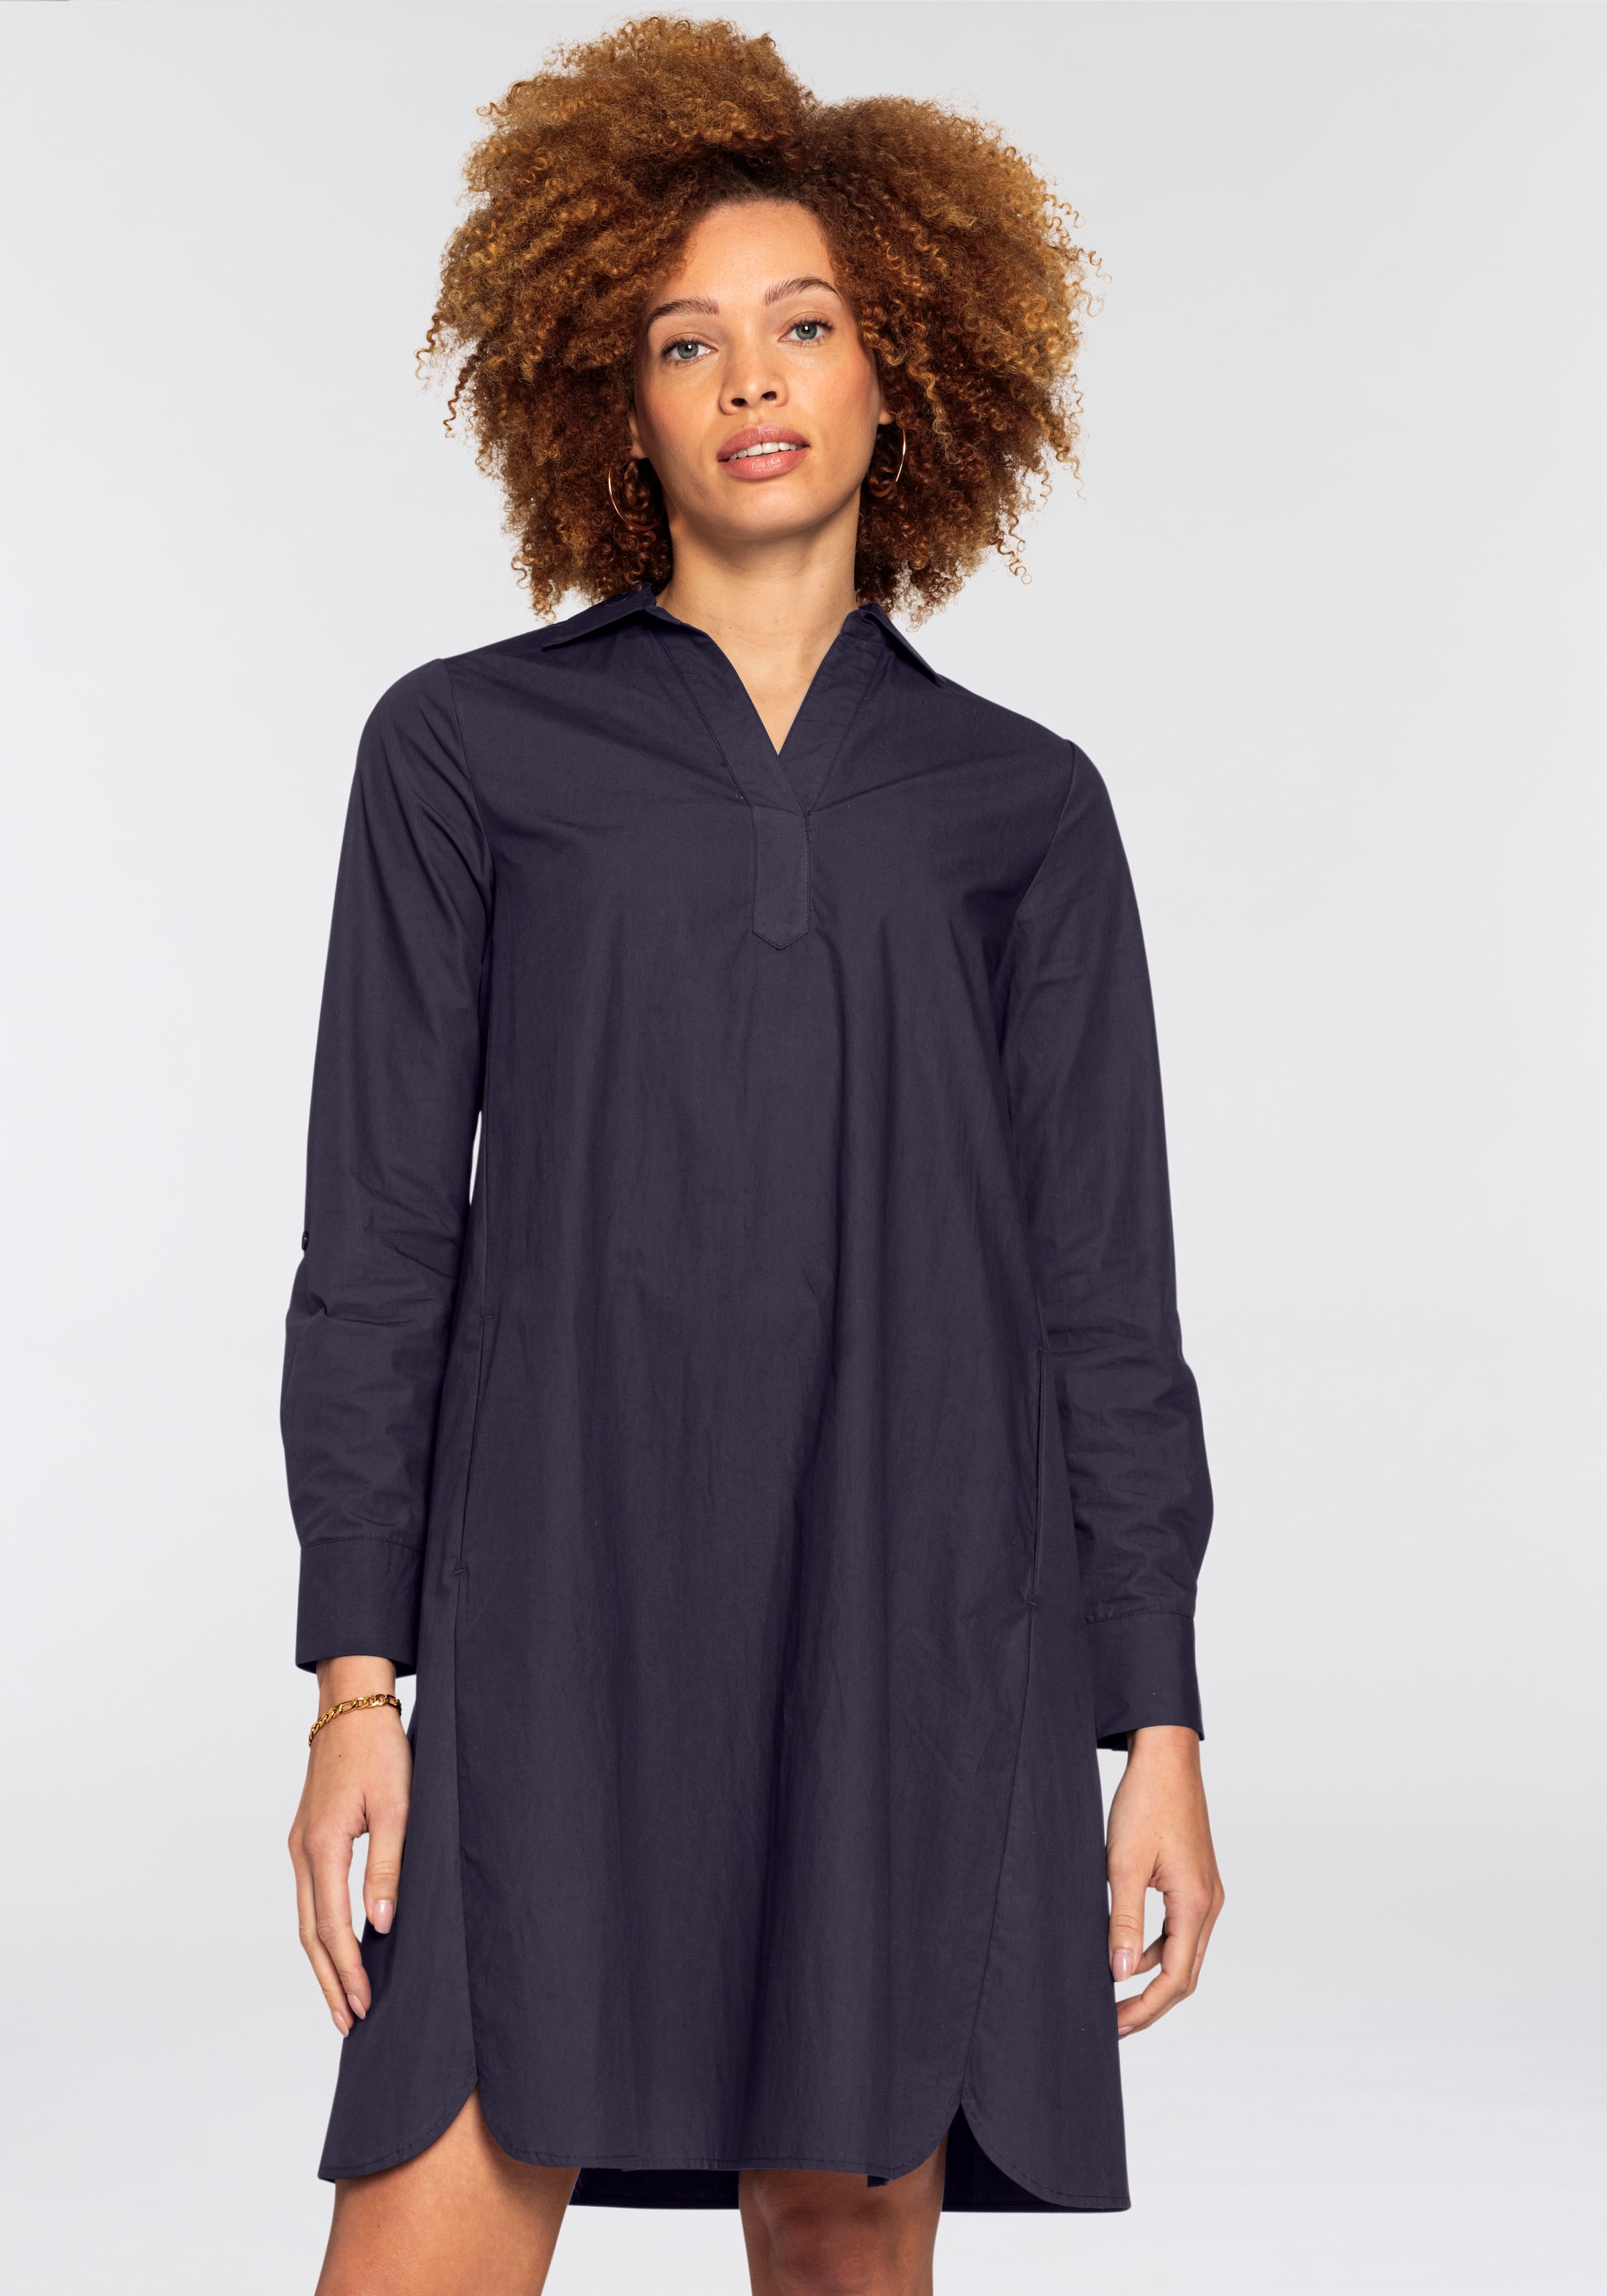 Blusenkleid, in A-Linie aus hochwertiger Baumwolle - NEUE KOLLEKTION